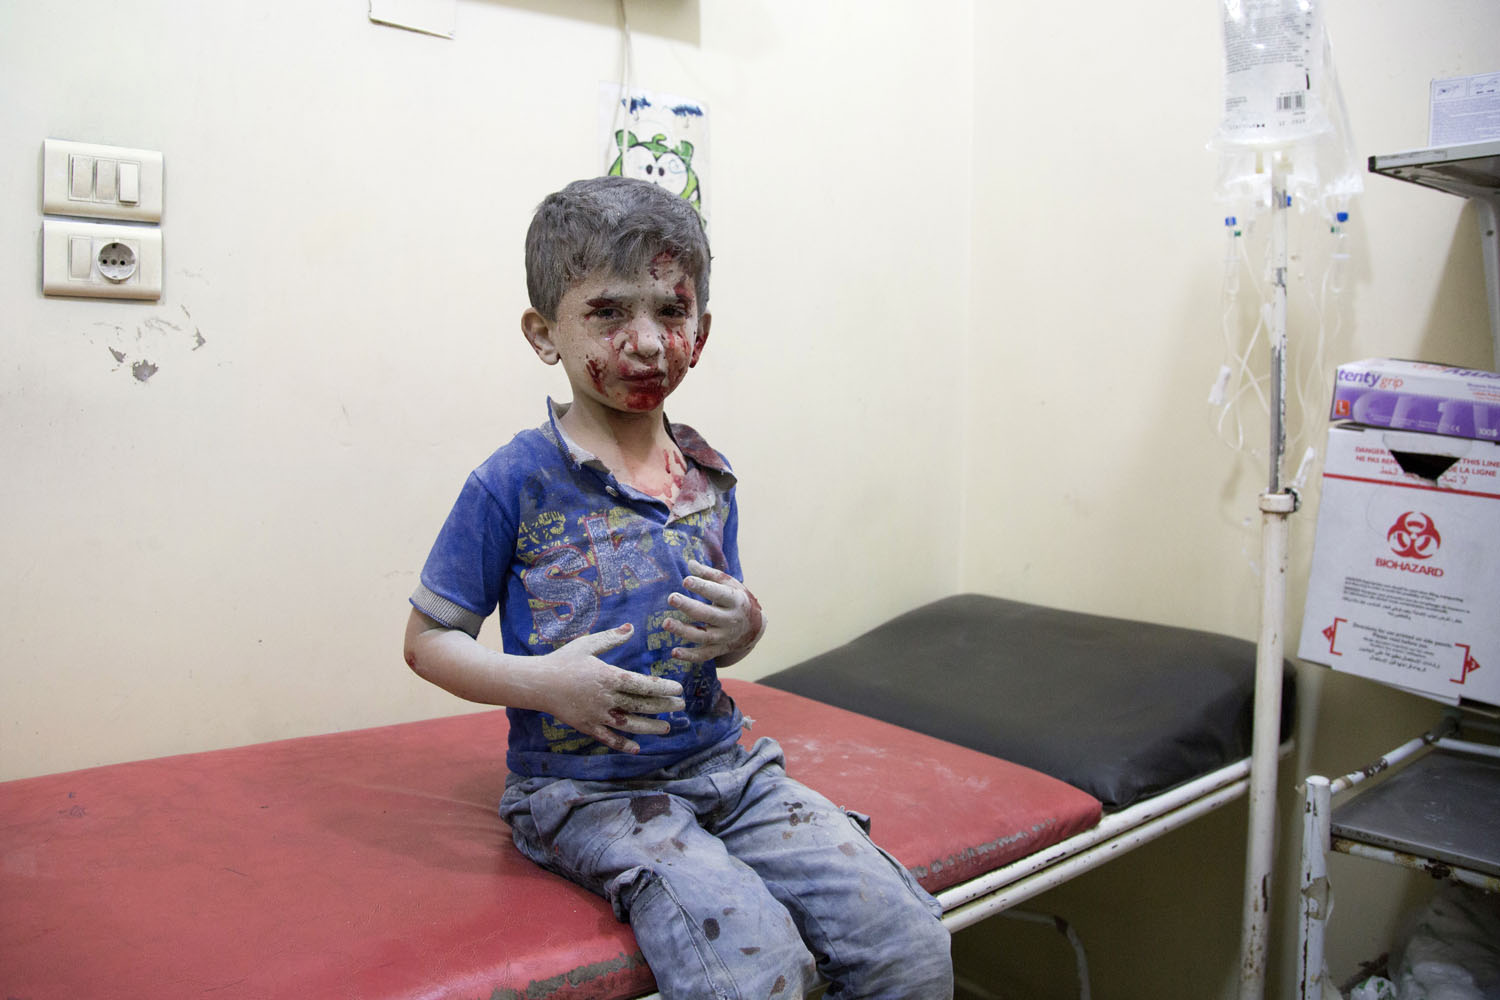 © Karam Al-Masria - AFP PHOTO - Voici un exemple de photo de conflit que Marina doit inspecter et éditer régulièrement. C'est le portrait d'un enfant syrien, attendant d'être pris en charge dans un hôpital de fortune, après avoir subi les bombardements russes et syriens des quartiers est d'Alep défendus par les rebelles le 24 septembre 2016.